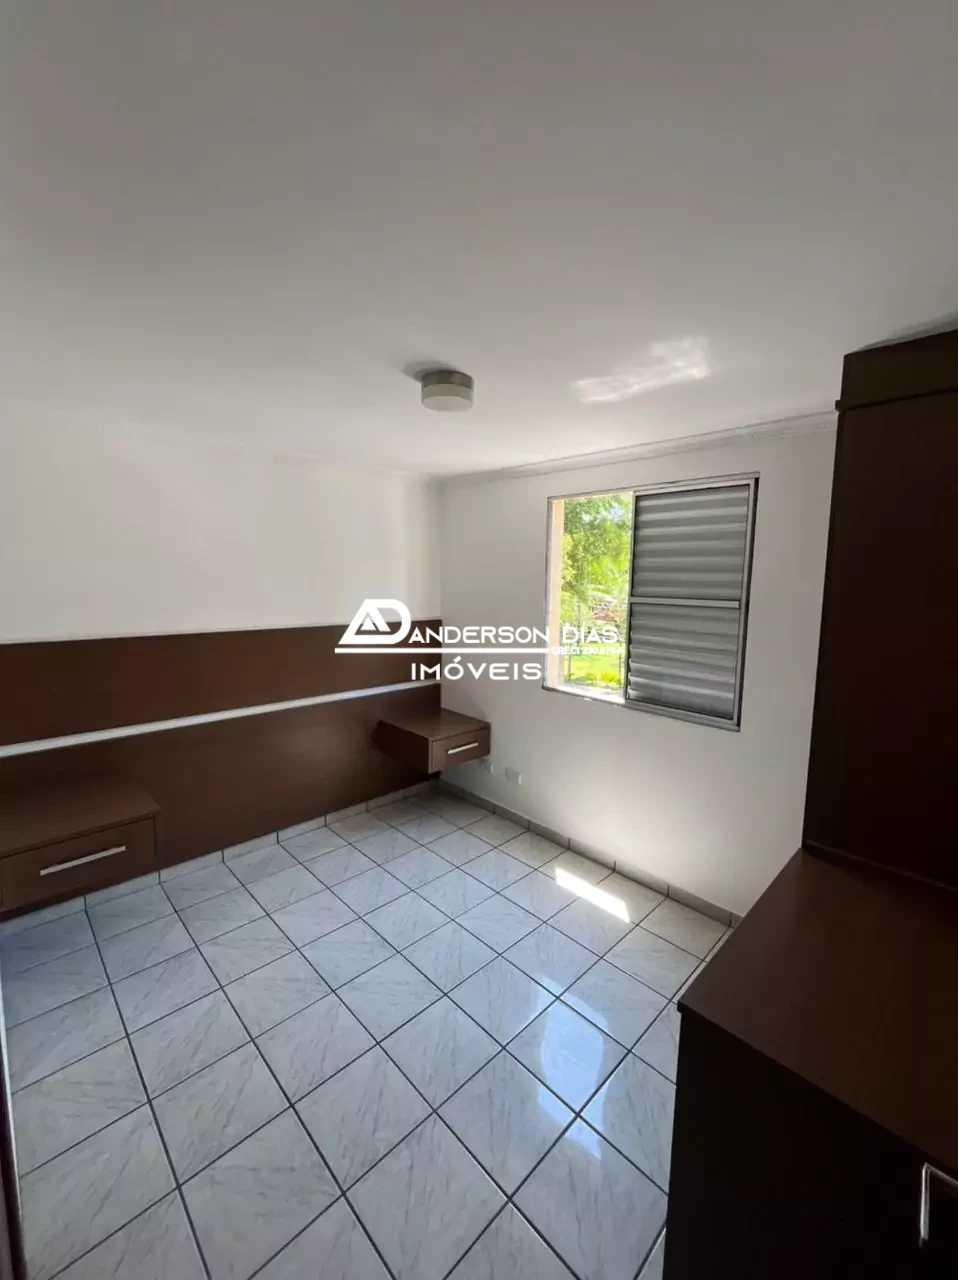 Apartamento com 3 dormitórios, 69,00m² por R$ 298.000,00 - Jardim Satélite - São José dos campos/SP